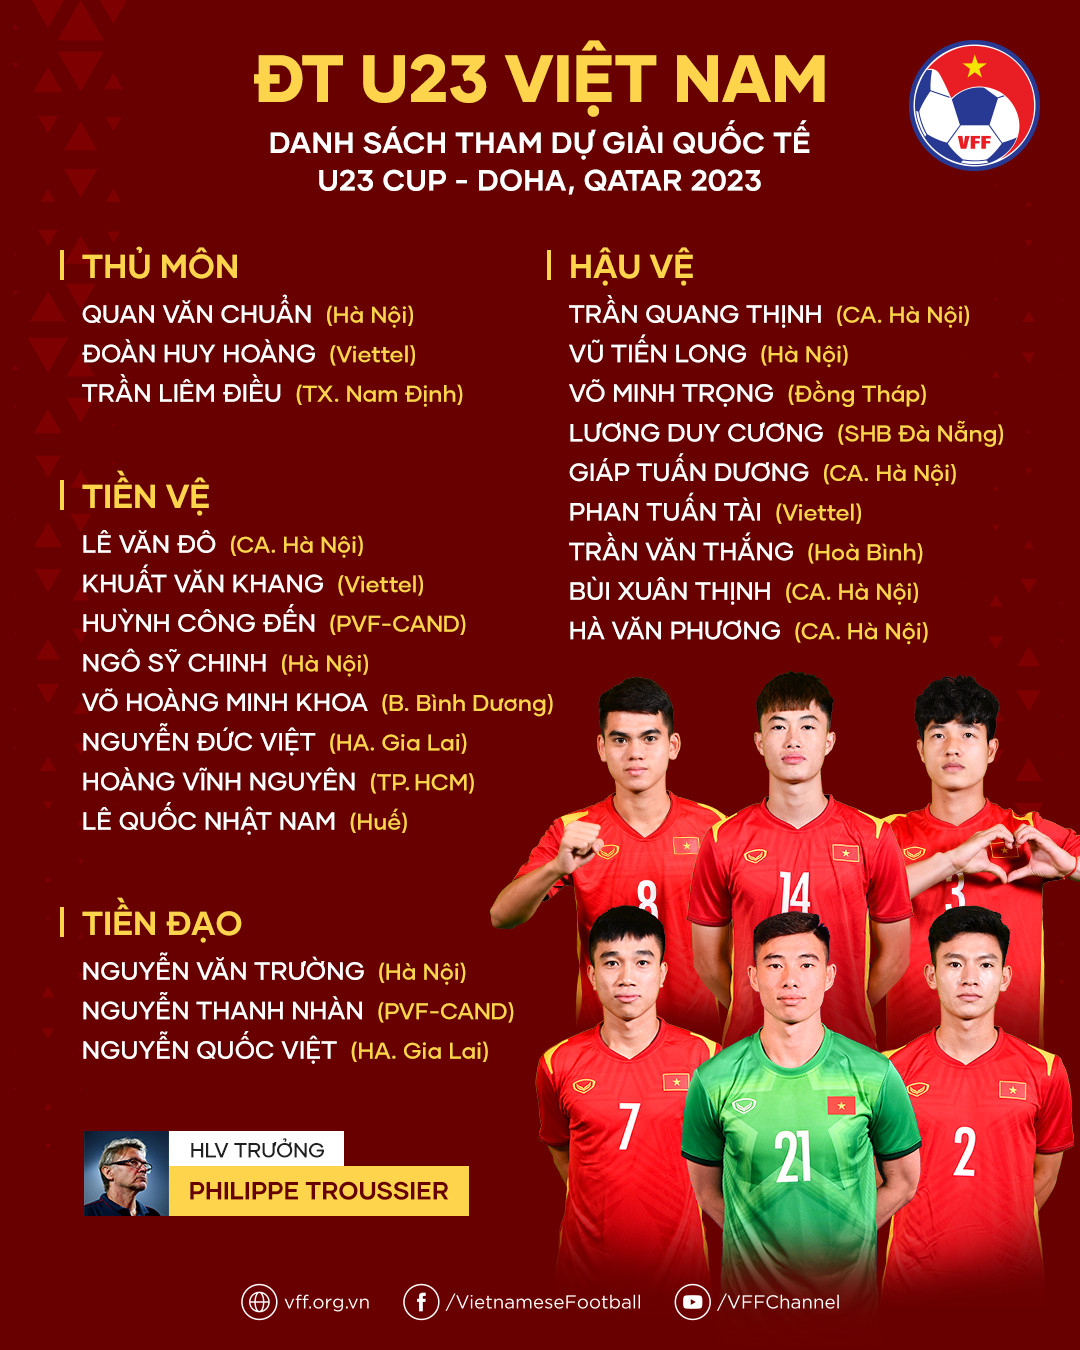 Chốt danh sách U23 Việt Nam: HLV Philippe Troussier loại 11 cầu thủ  - Ảnh 1.